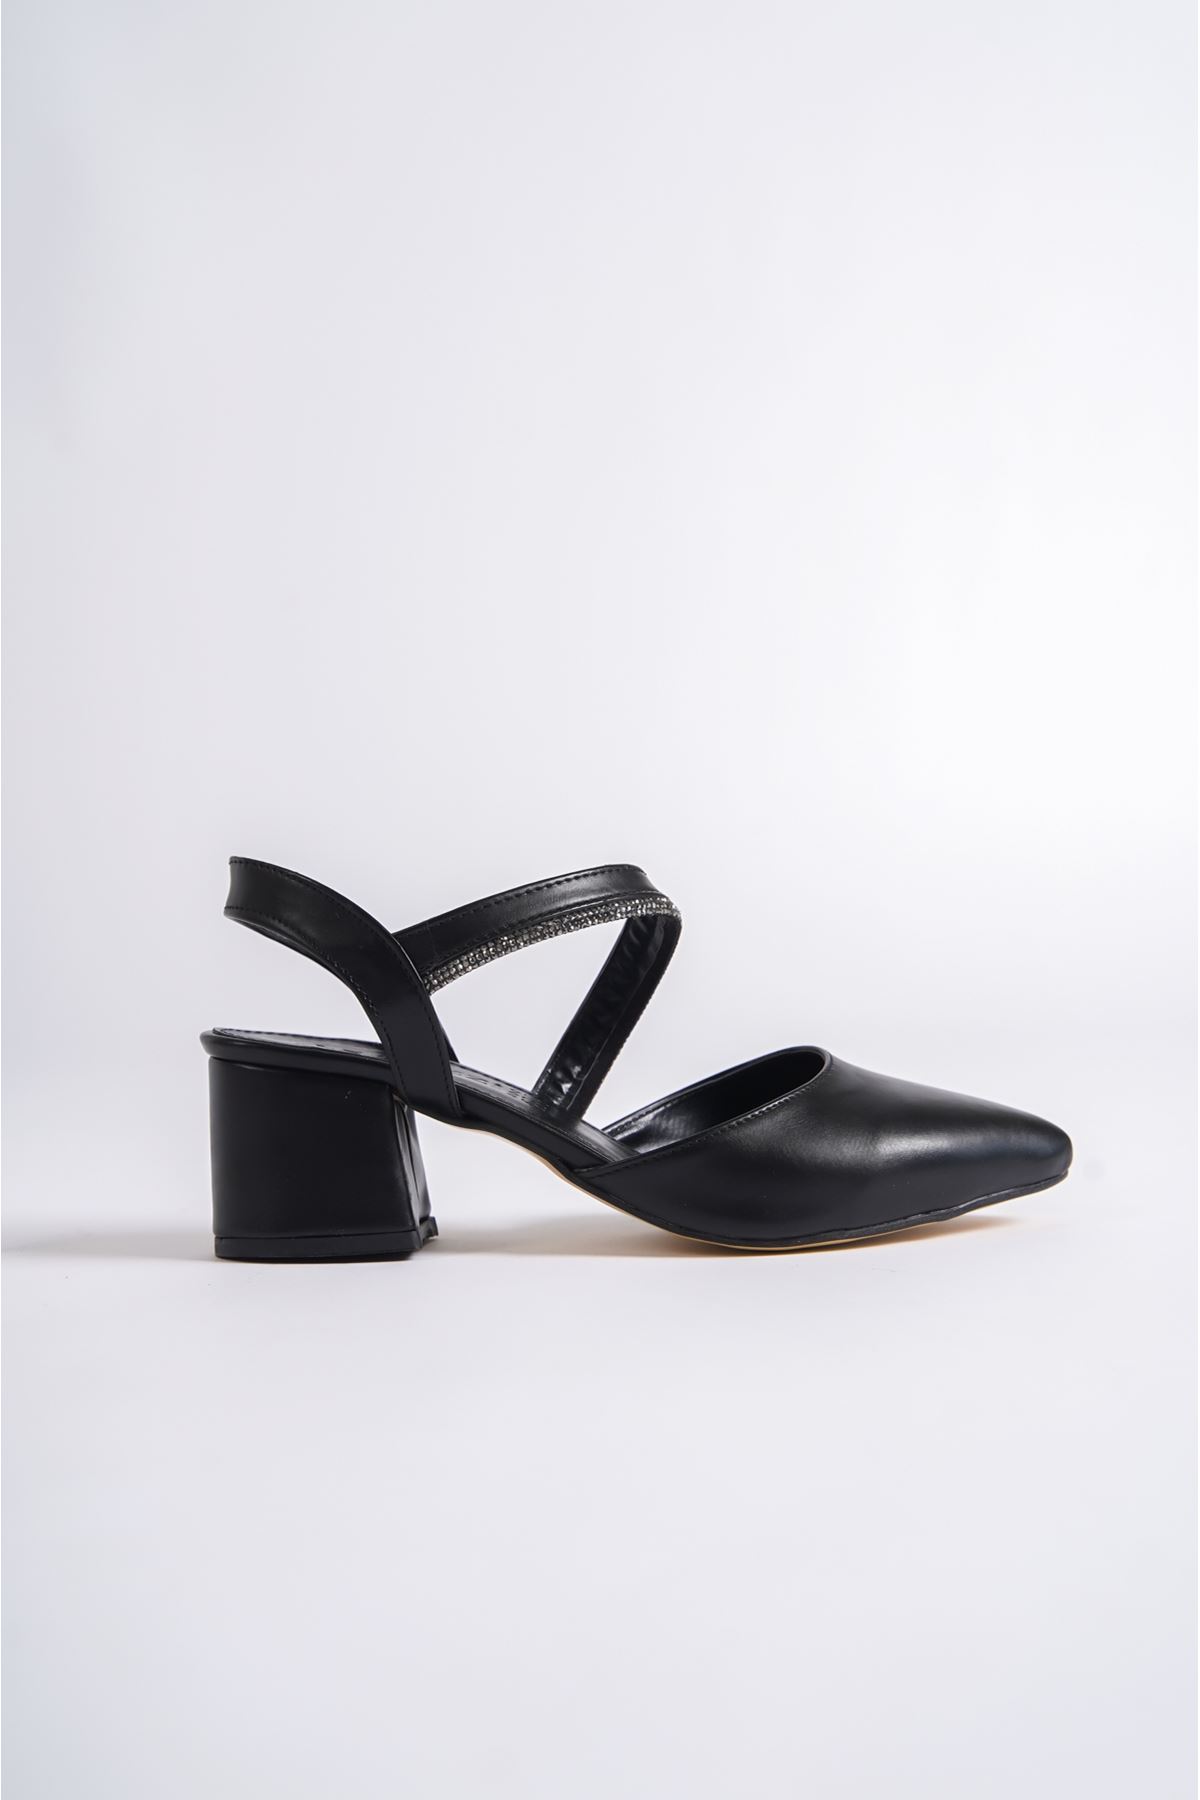 Madel Siyah Mat Deri Topuklu Kadın Ayakkabı